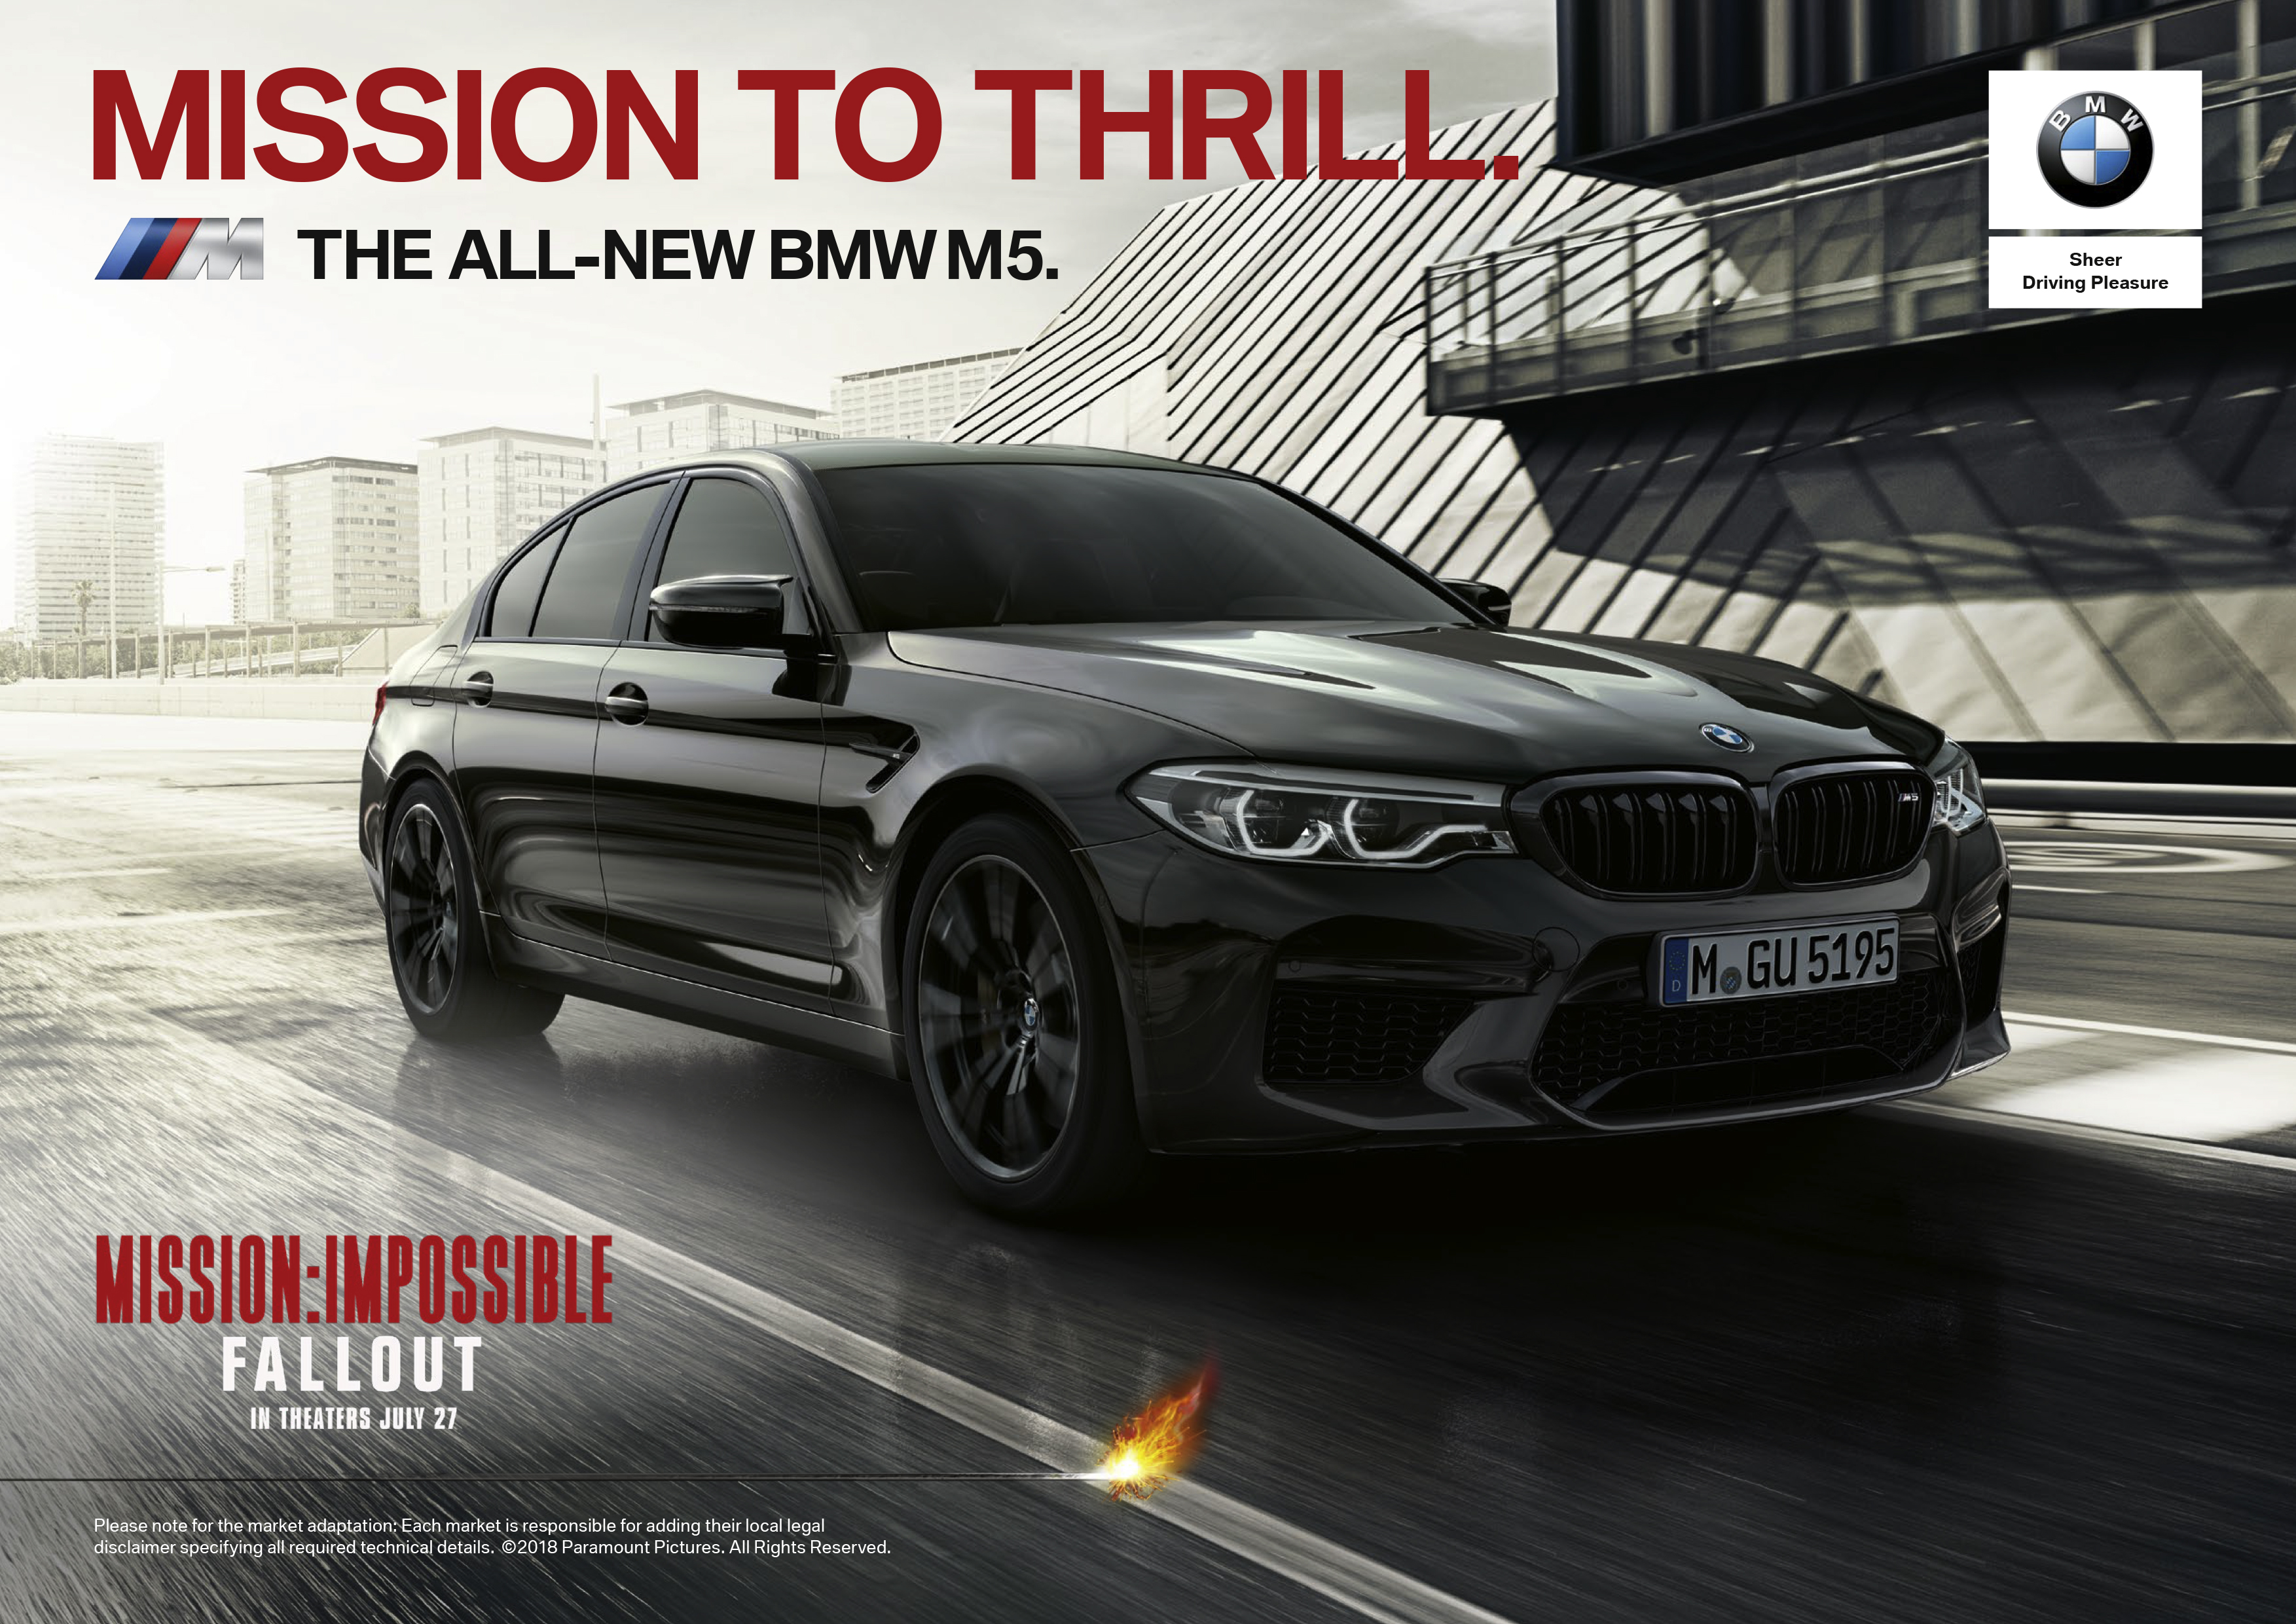 BMW M5 2019 estrela novo “Missão Impossível - Efeito Fallout” [Divulgação l BMW Group]